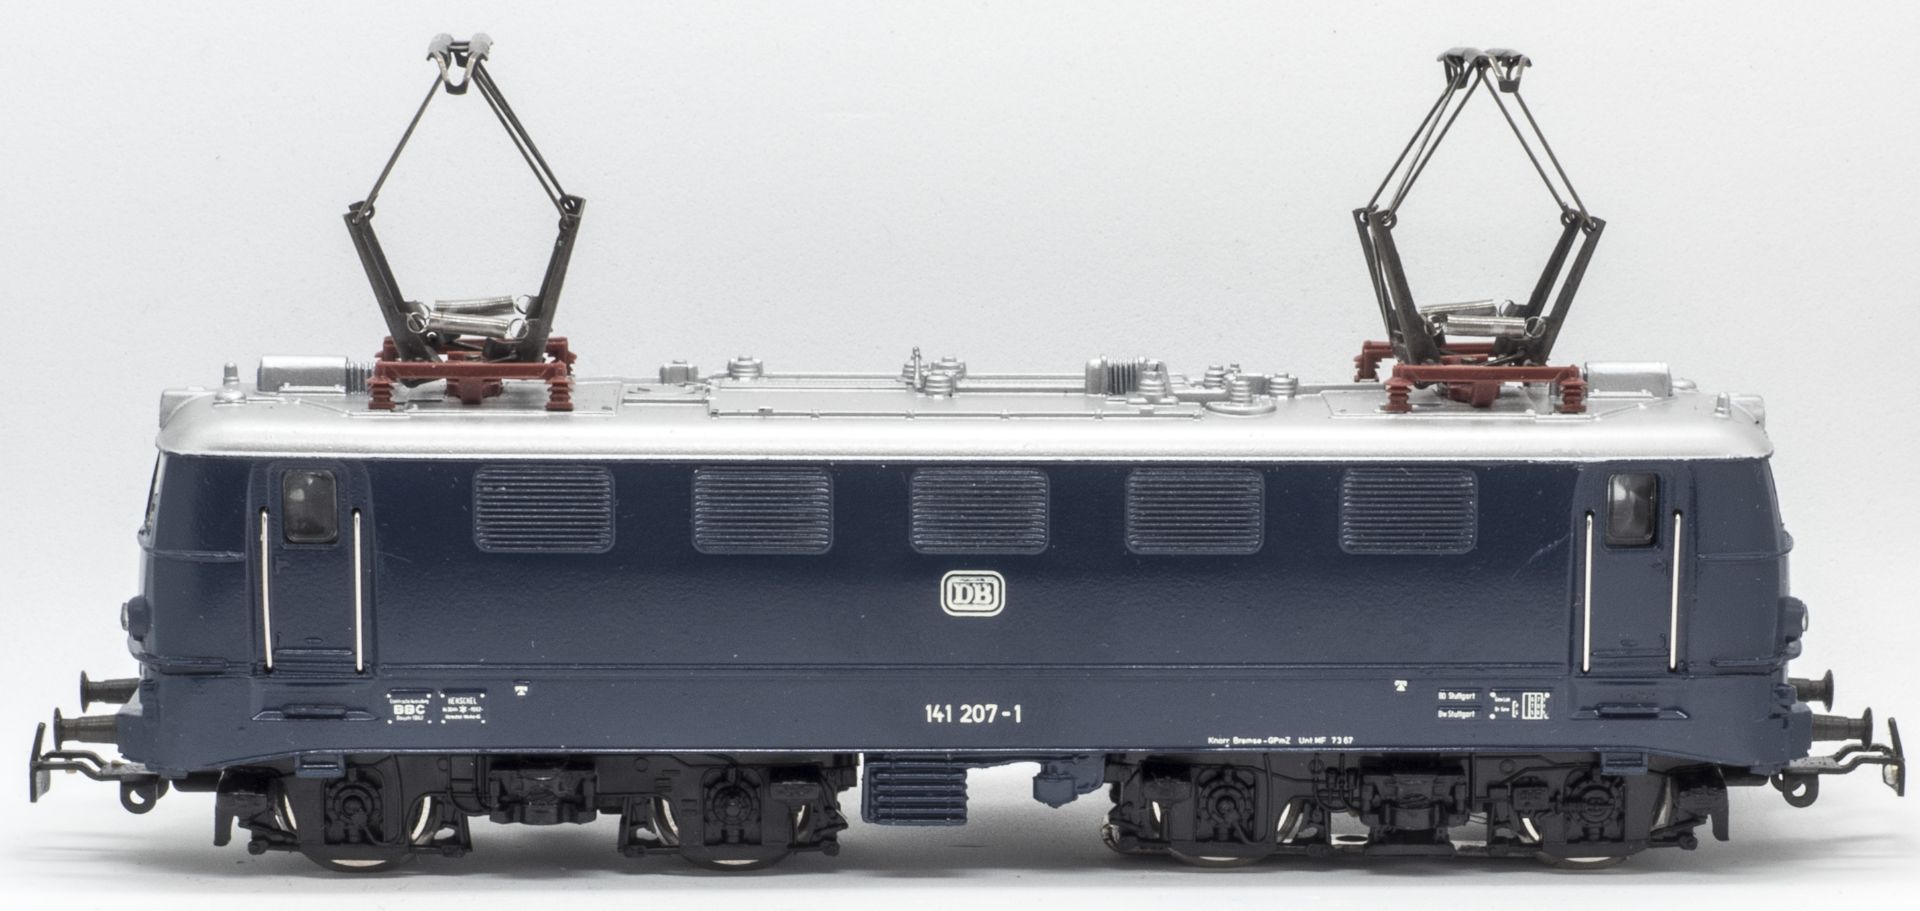 Primex E - Lokomotive BR 141, BN 141 207-1, Spur H0, sehr guter Zustand - nur zur Probe gelaufen.